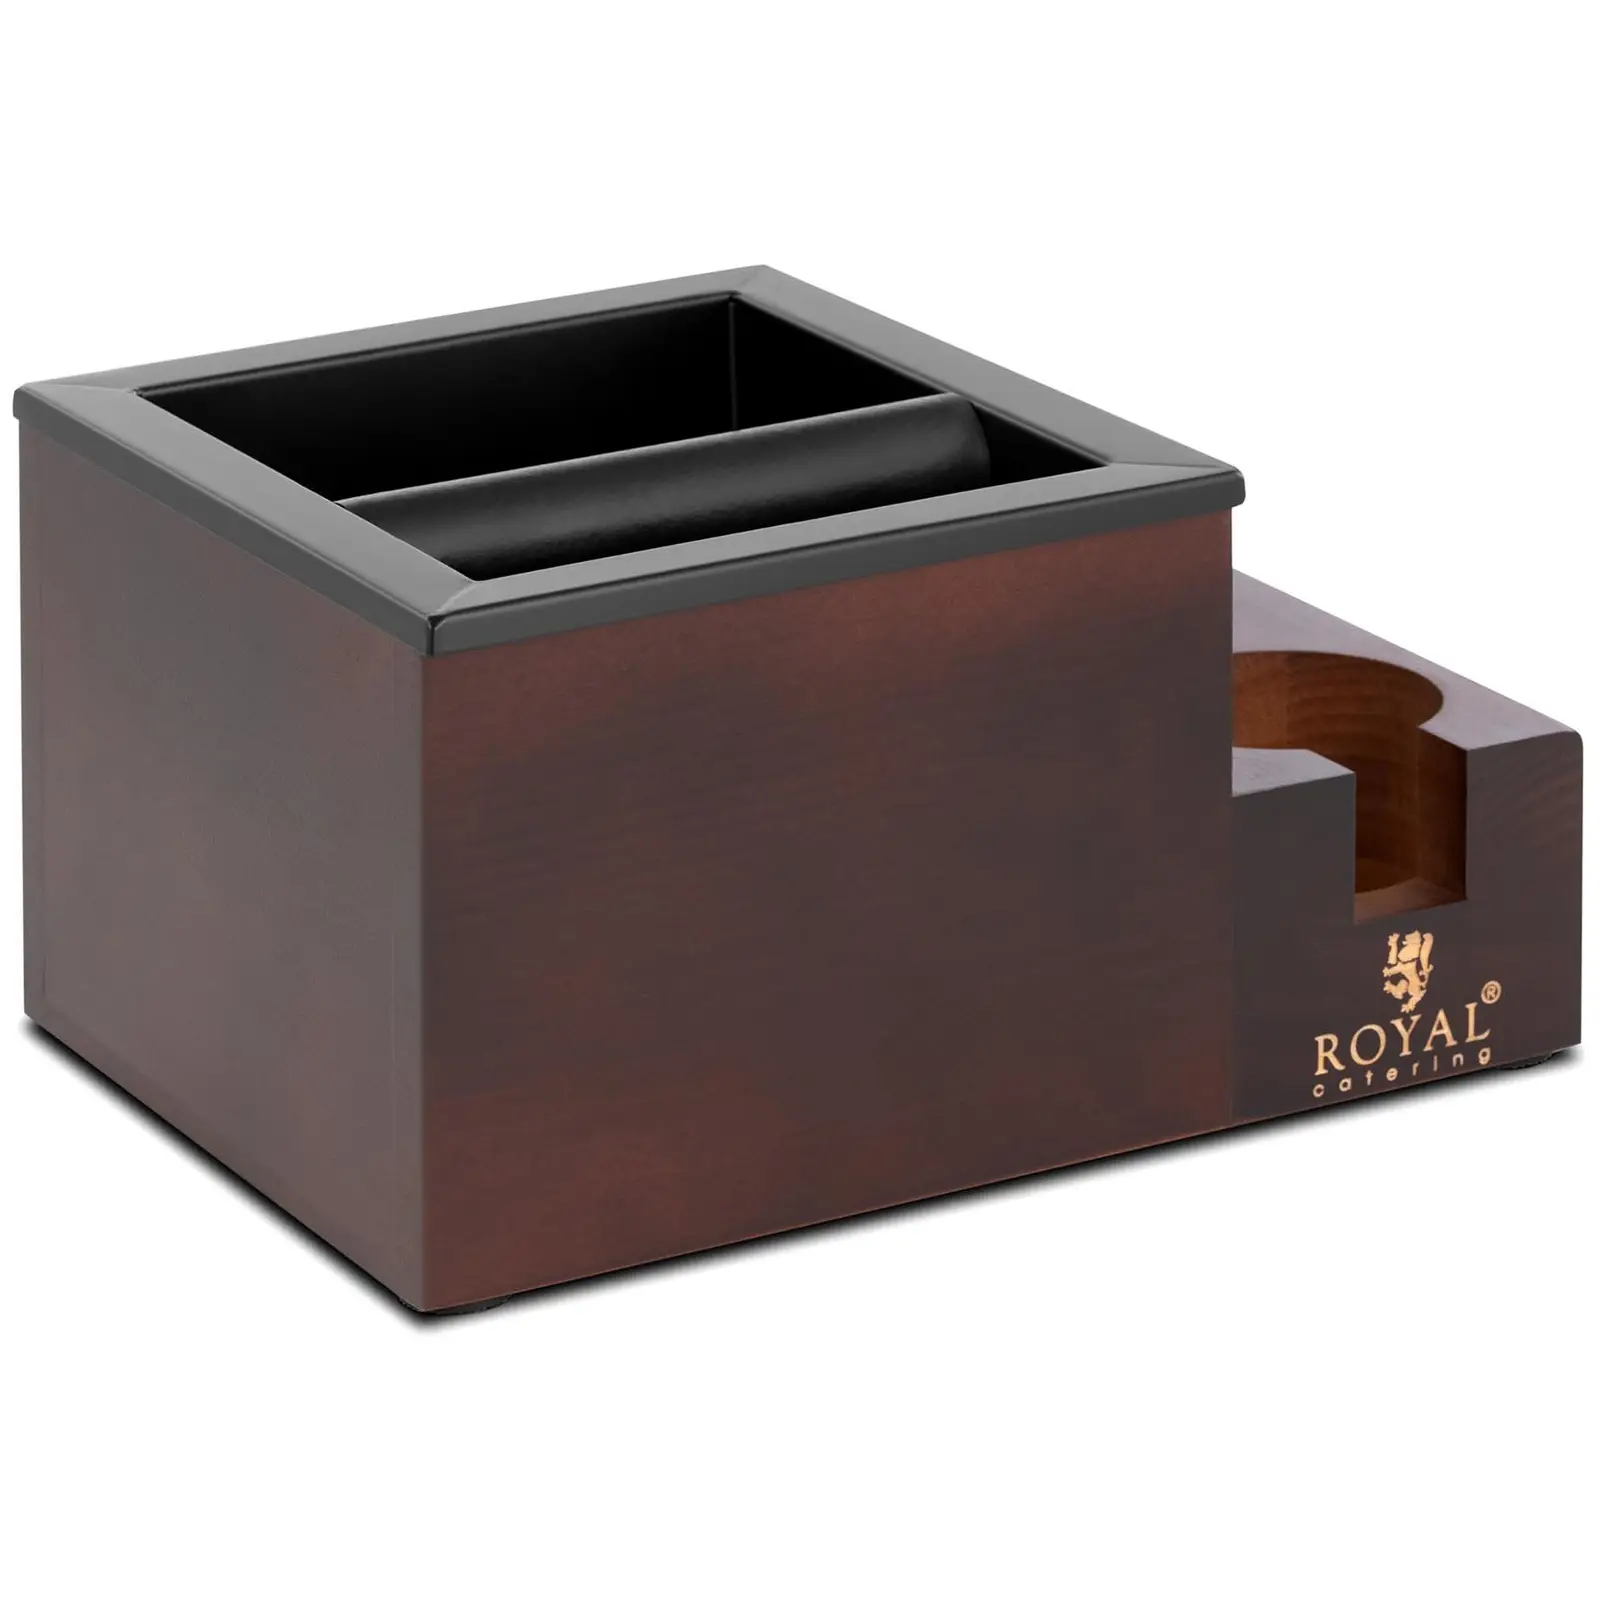 Caja para posos de café - Acero inoxidable / madera - 3,1 L - Con barra de golpeo y compartimento para accesorios - Royal Catering